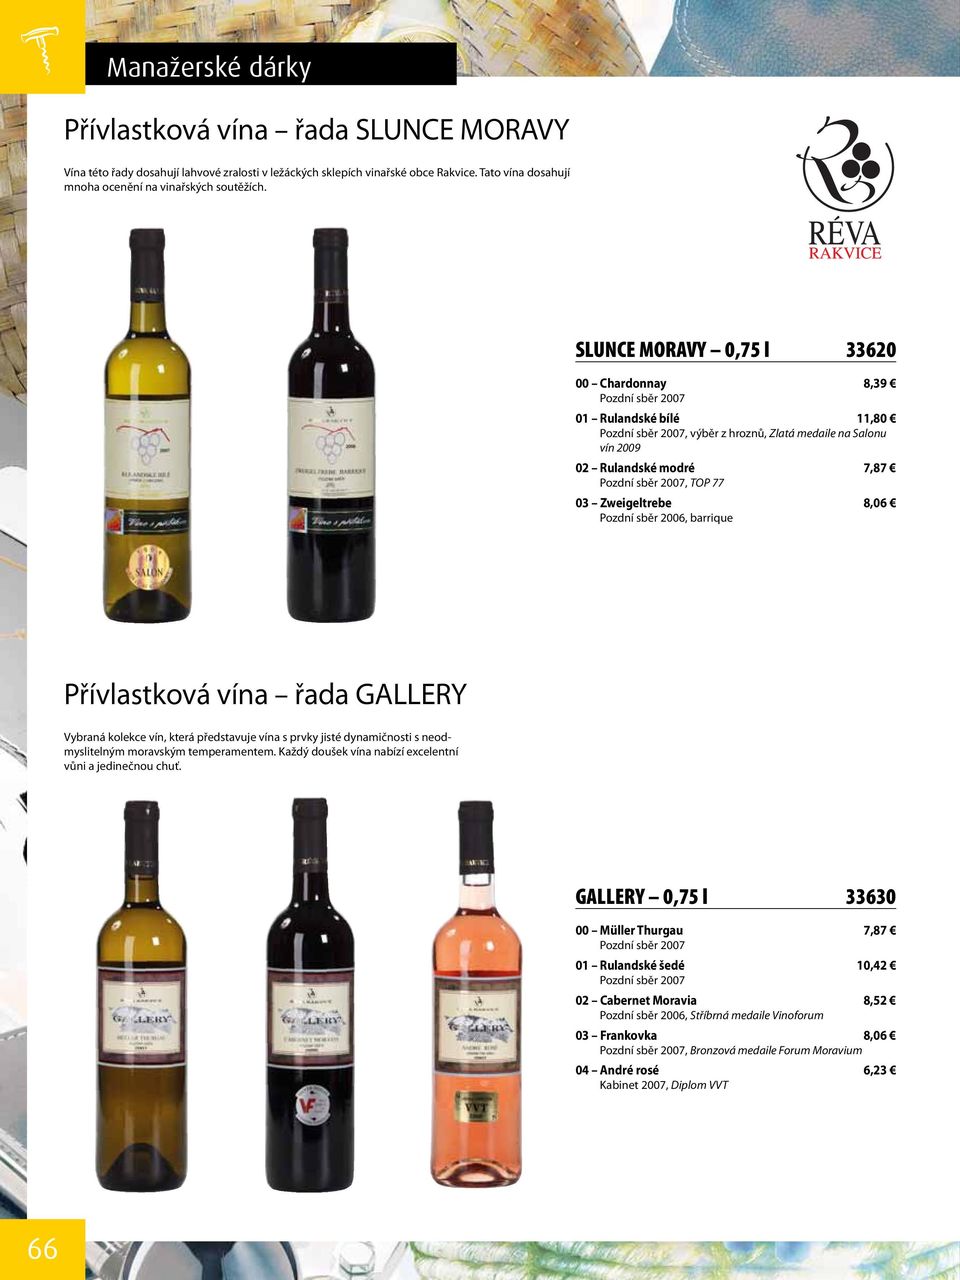 77 03 Zweigeltrebe 8,06 Pozdní sběr 2006, barrique Přívlastková vína řada GALLERY Vybraná kolekce vín, která představuje vína s prvky jisté dynamičnosti s neodmyslitelným moravským temperamentem.